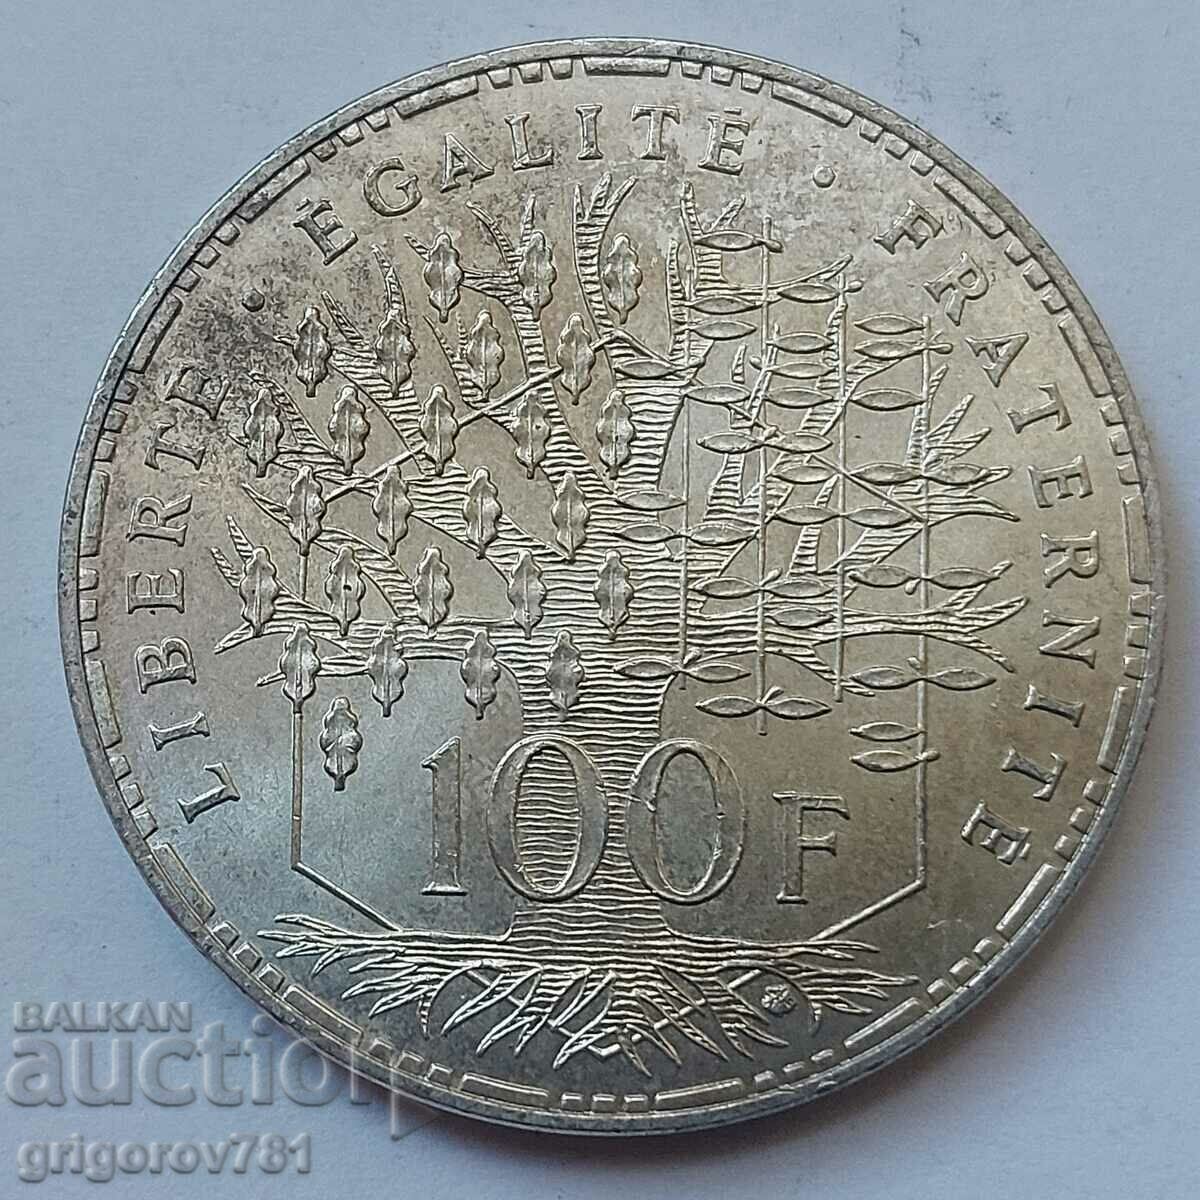 100 Franci Argint Franta 1982 - Moneda de argint #4